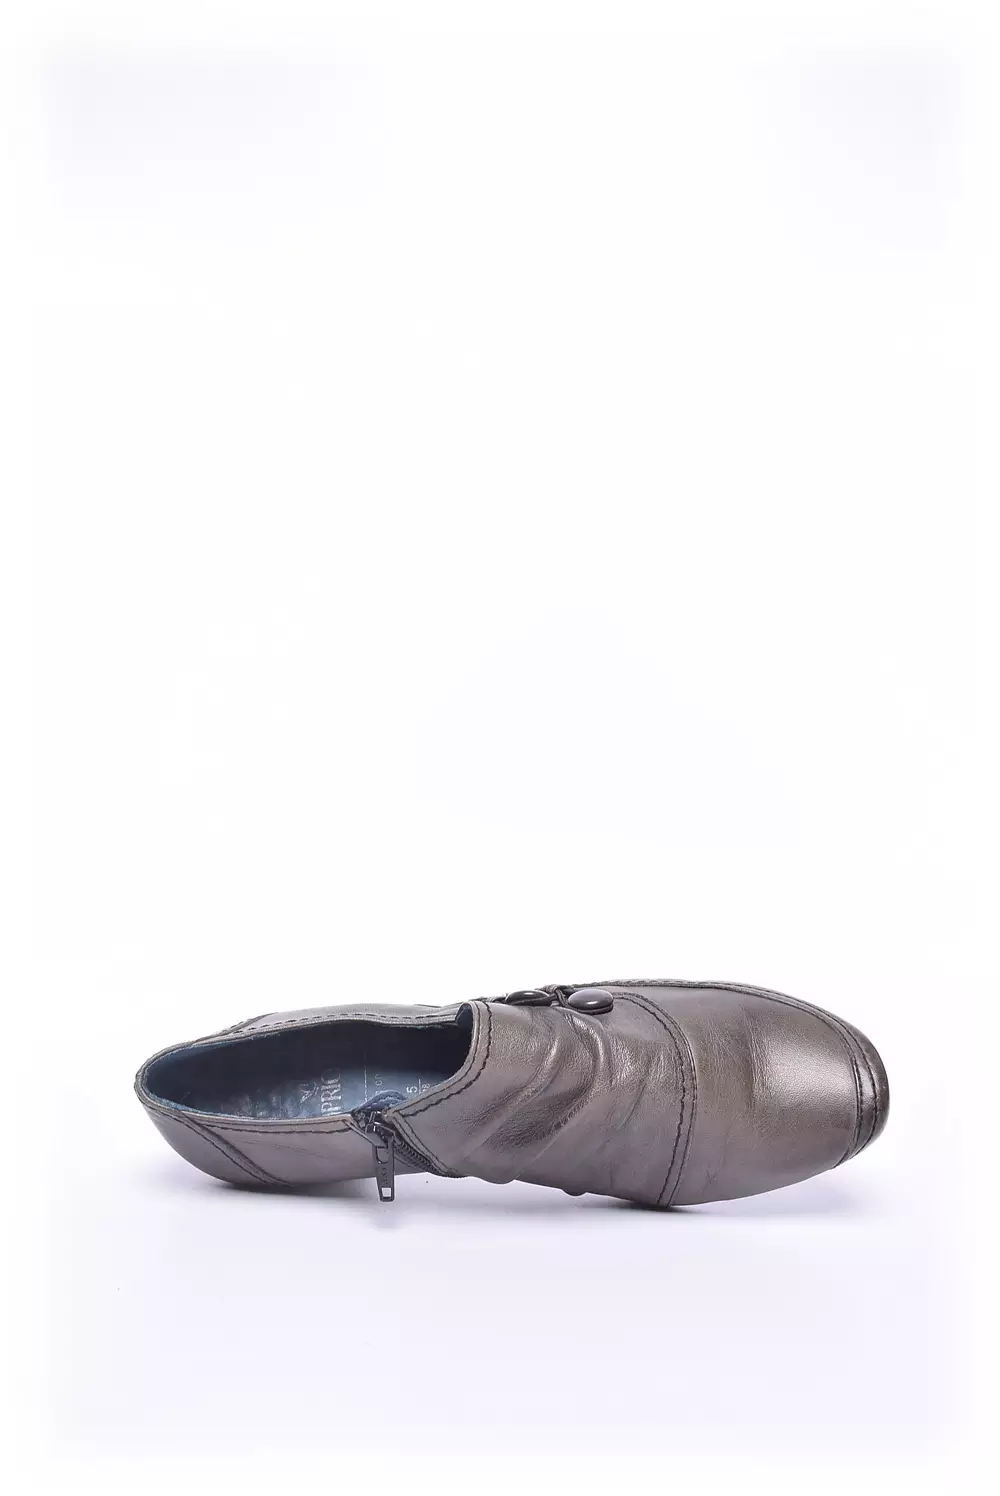 Pantofi dama  [5]